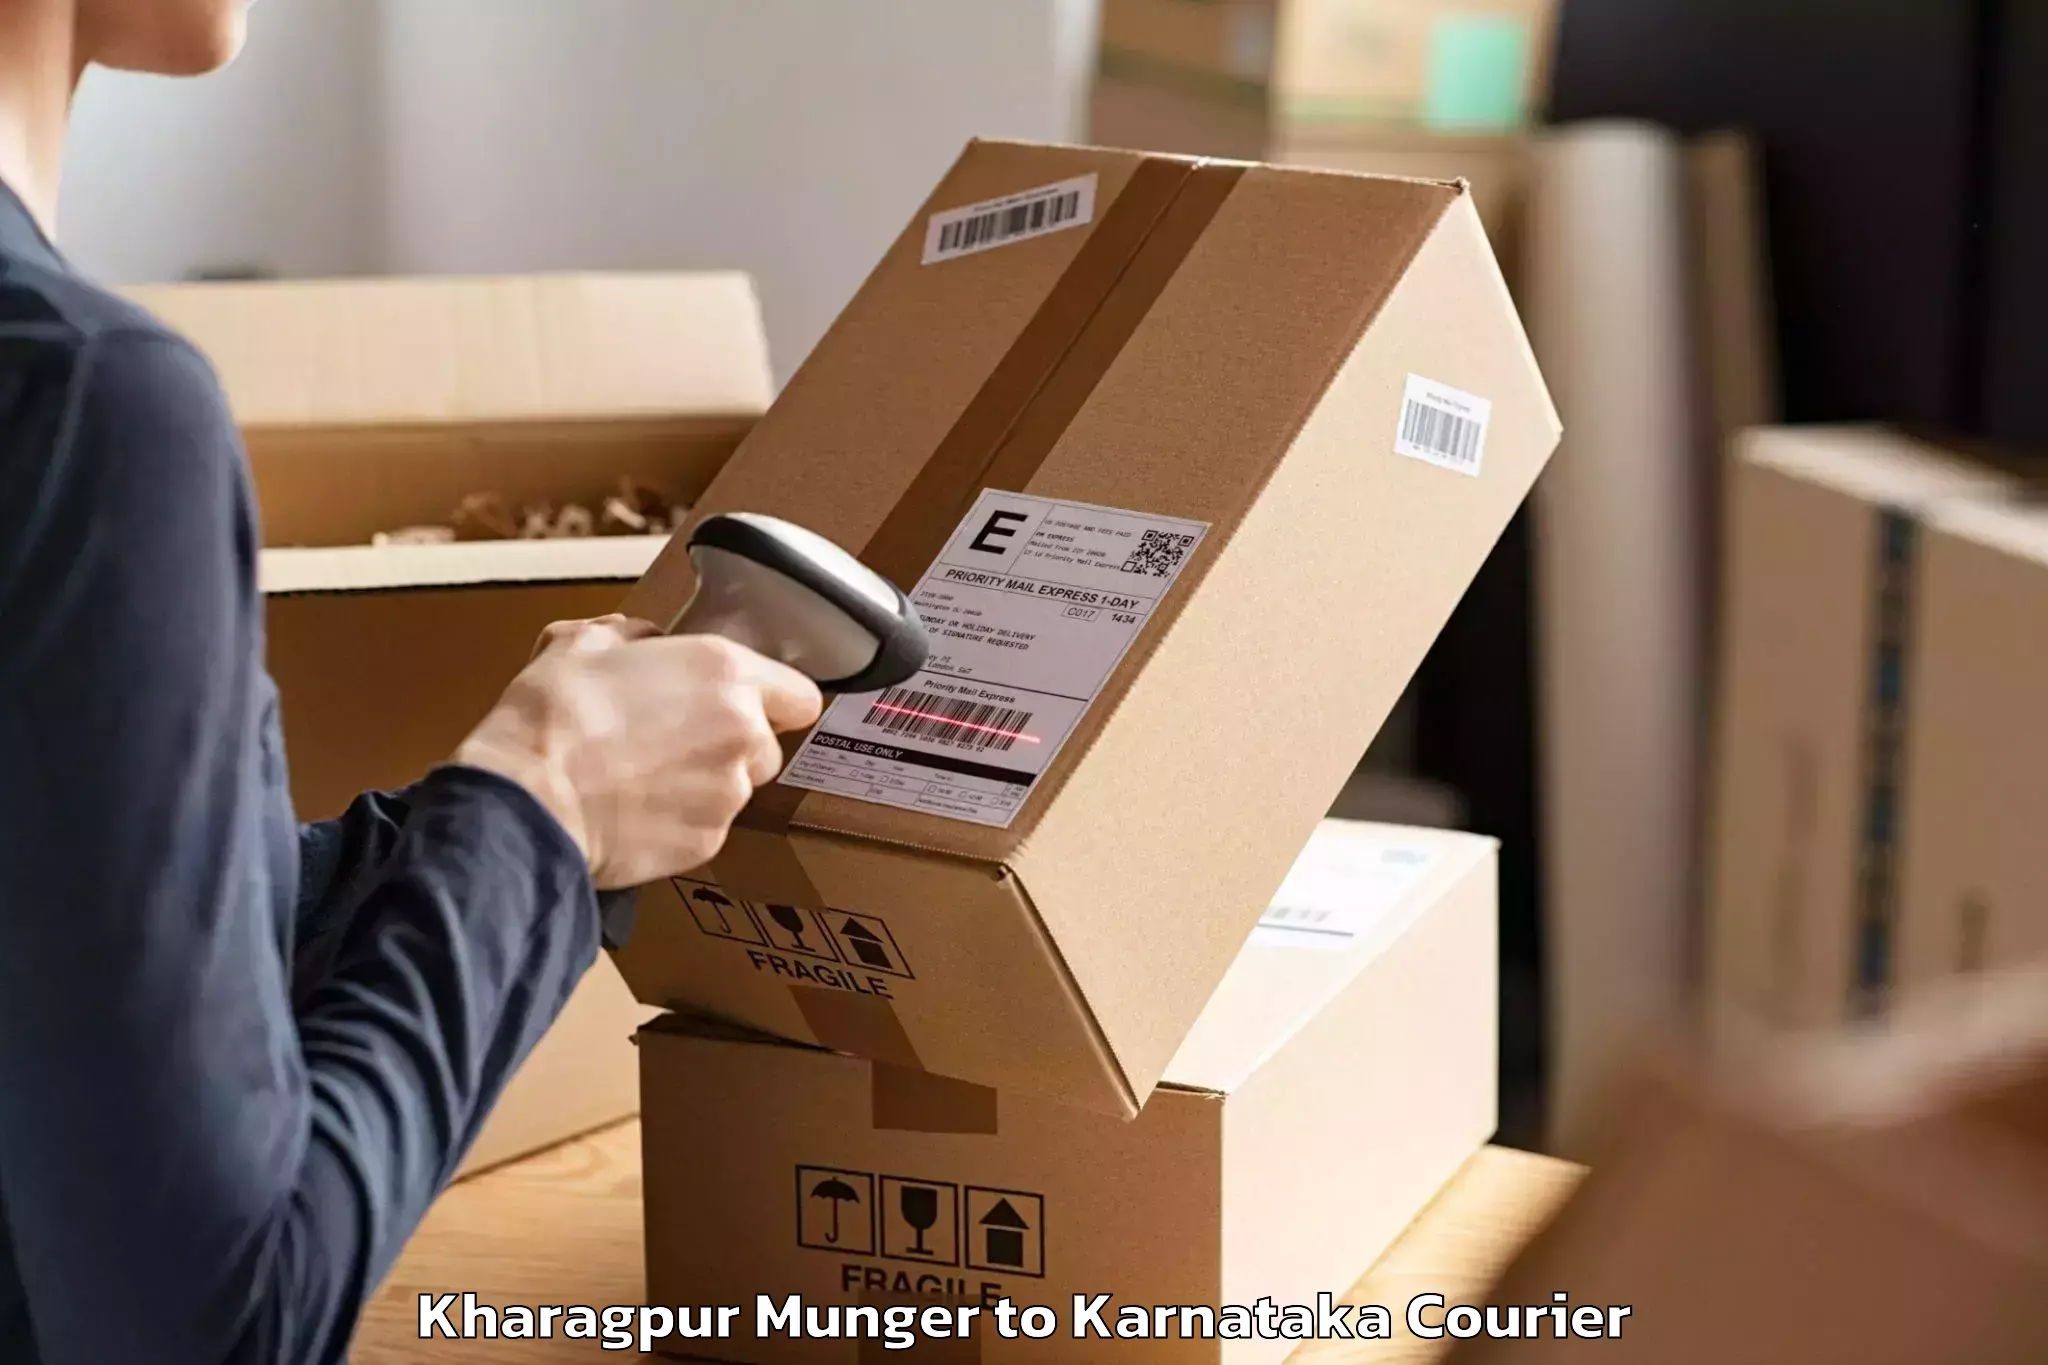 Professional furniture movers Kharagpur Munger to Bengaluru